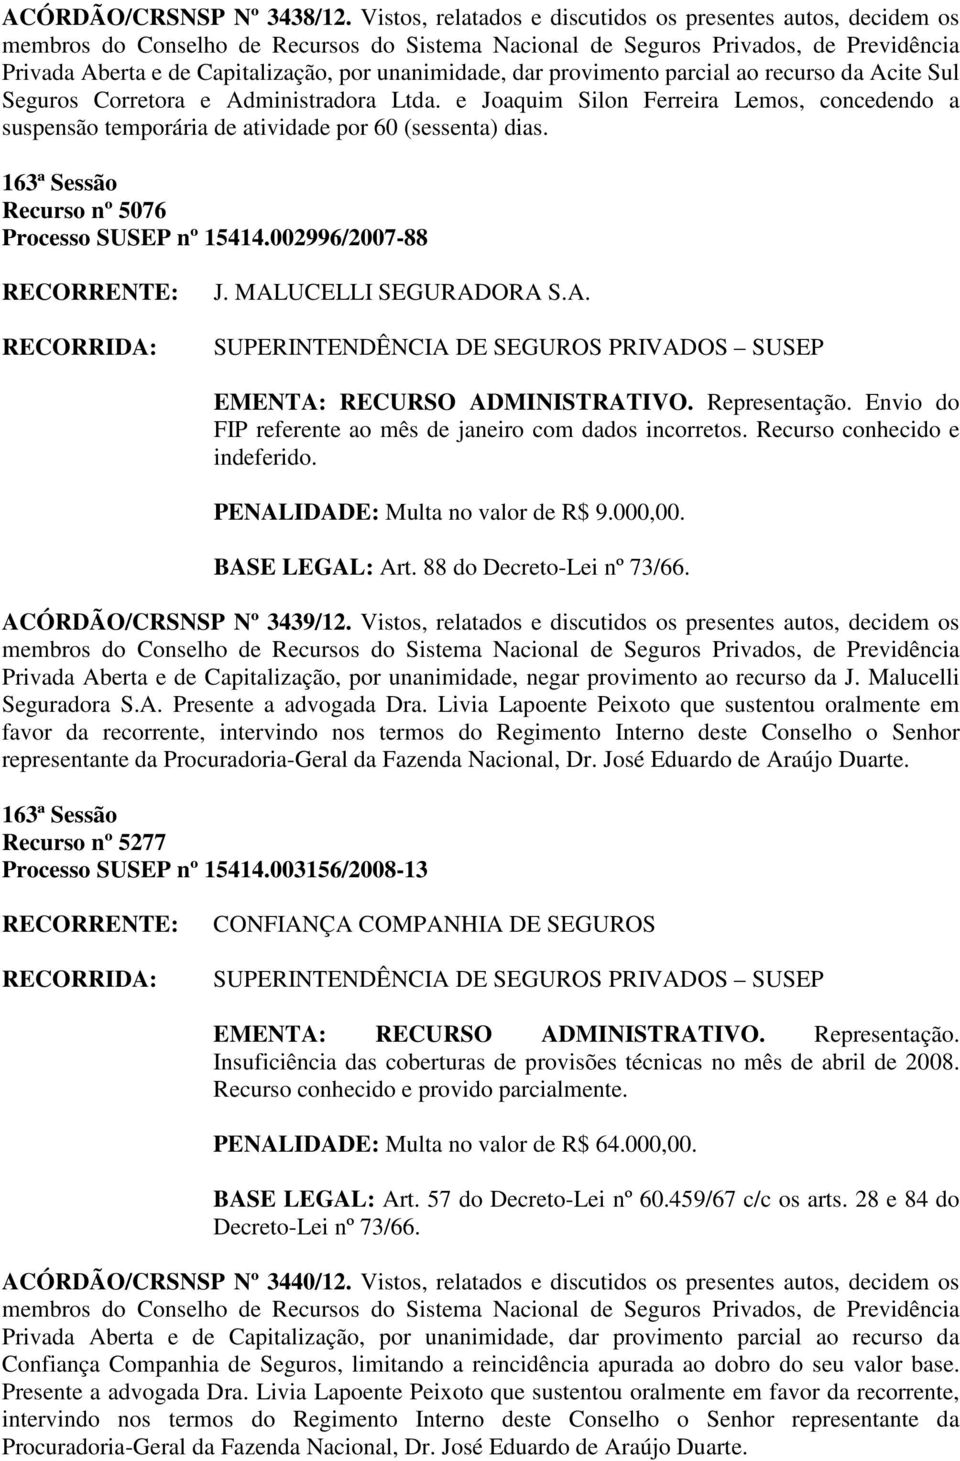 Ltda. e Joaquim Silon Ferreira Lemos, concedendo a suspensão temporária de atividade por 60 (sessenta) dias. Recurso nº 5076 Processo SUSEP nº 15414.002996/2007-88 J. MAL